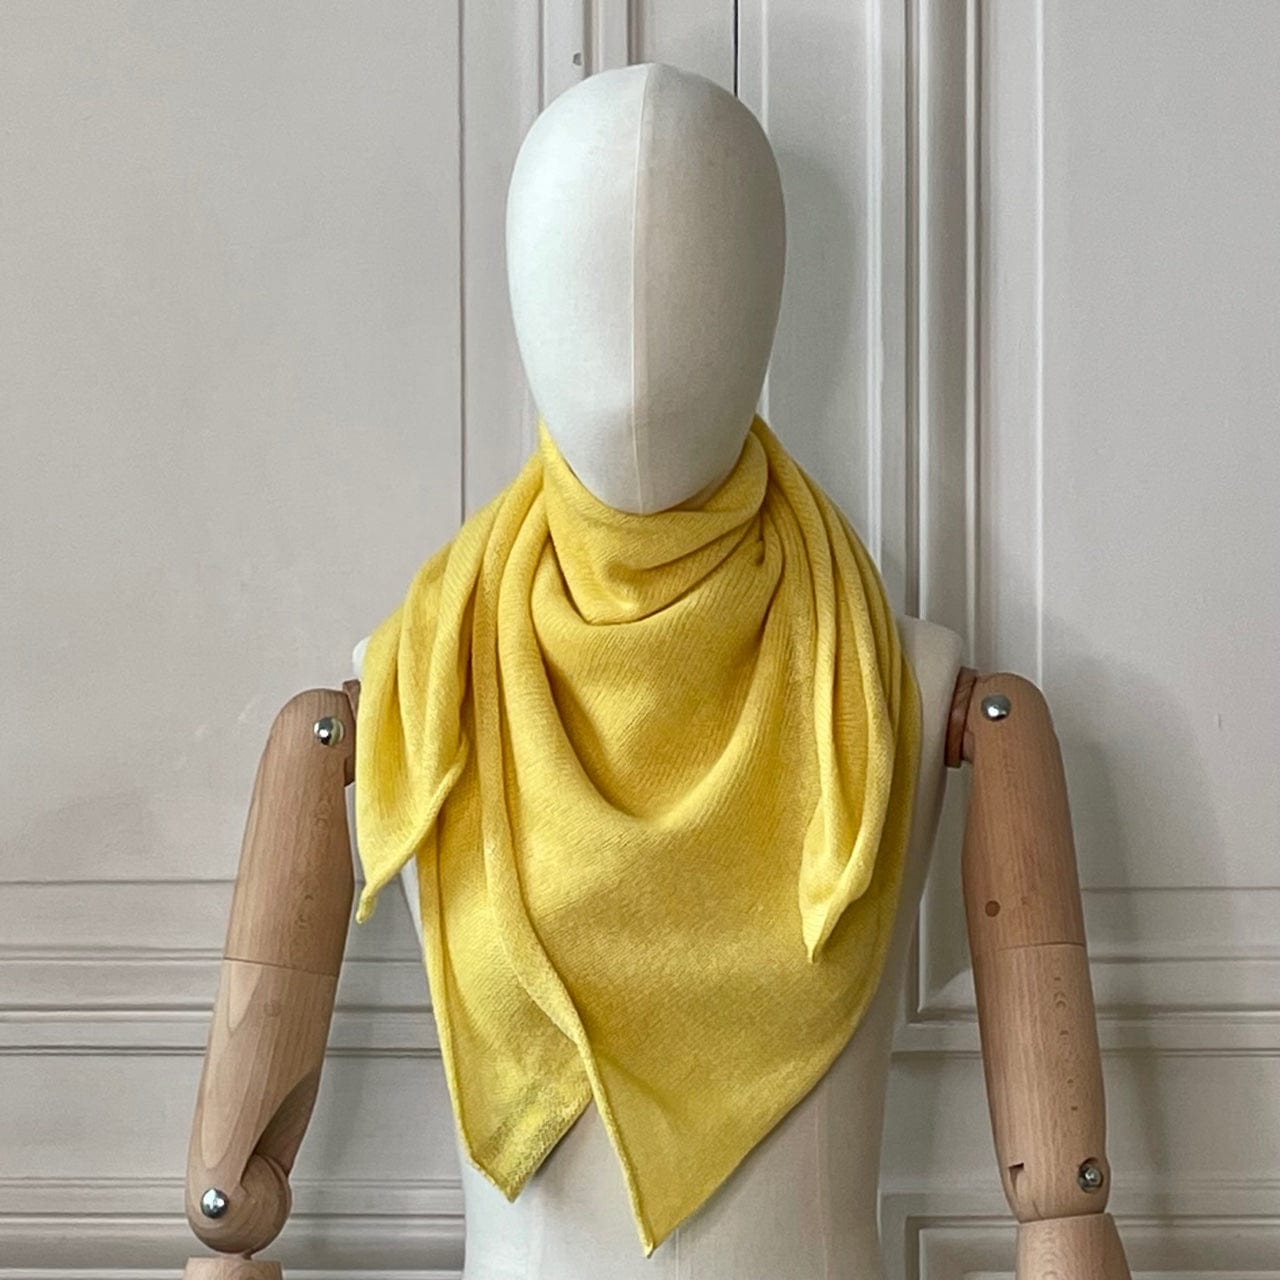 Carré jaune soleil tricoté en France 58% cachemire 42% lin